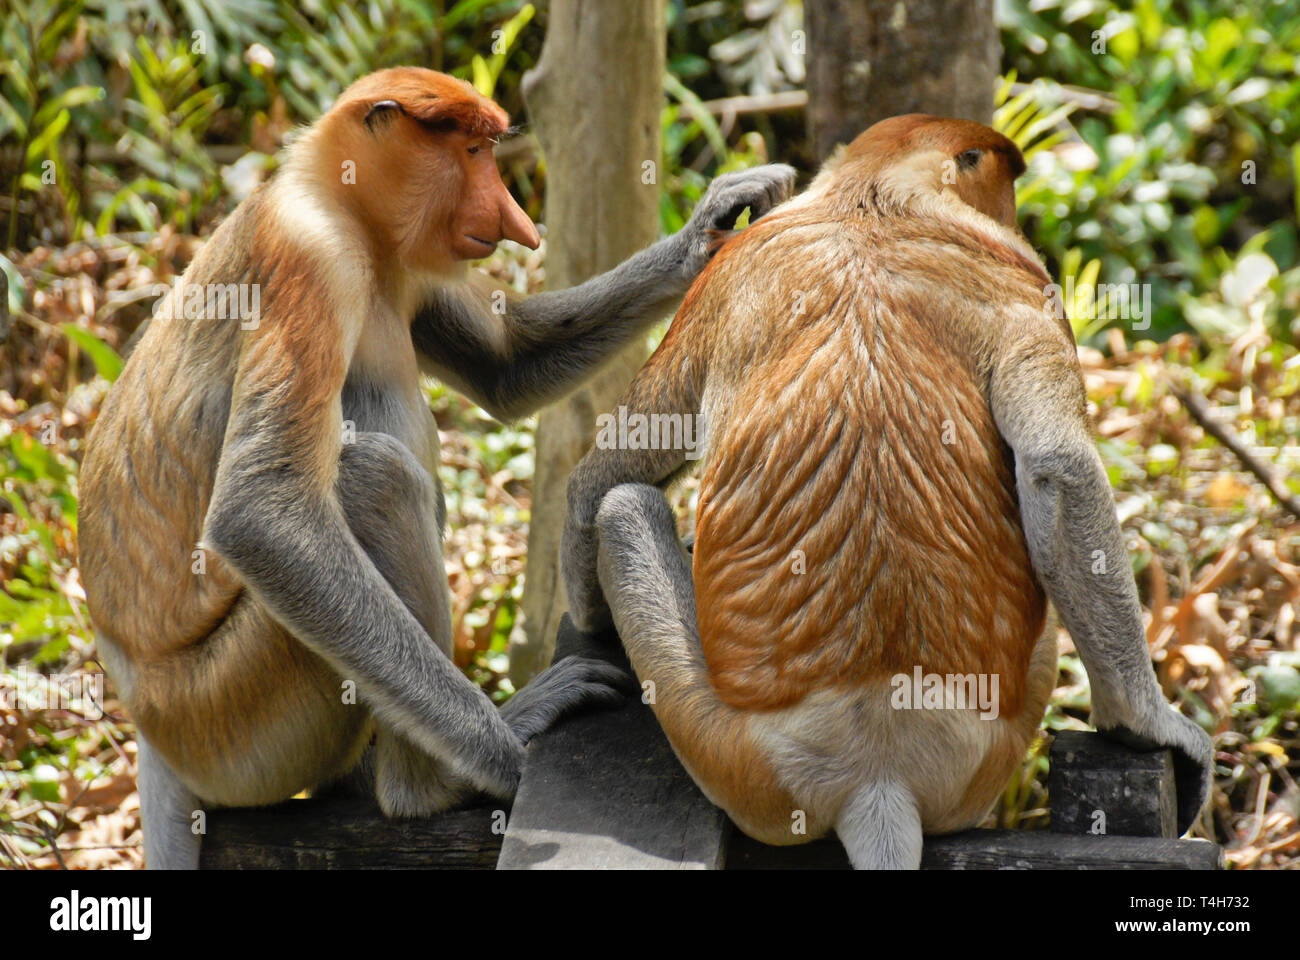 Proboscis masculins (singes) bec long toilettage, Sabah (Bornéo), Malaisie Banque D'Images